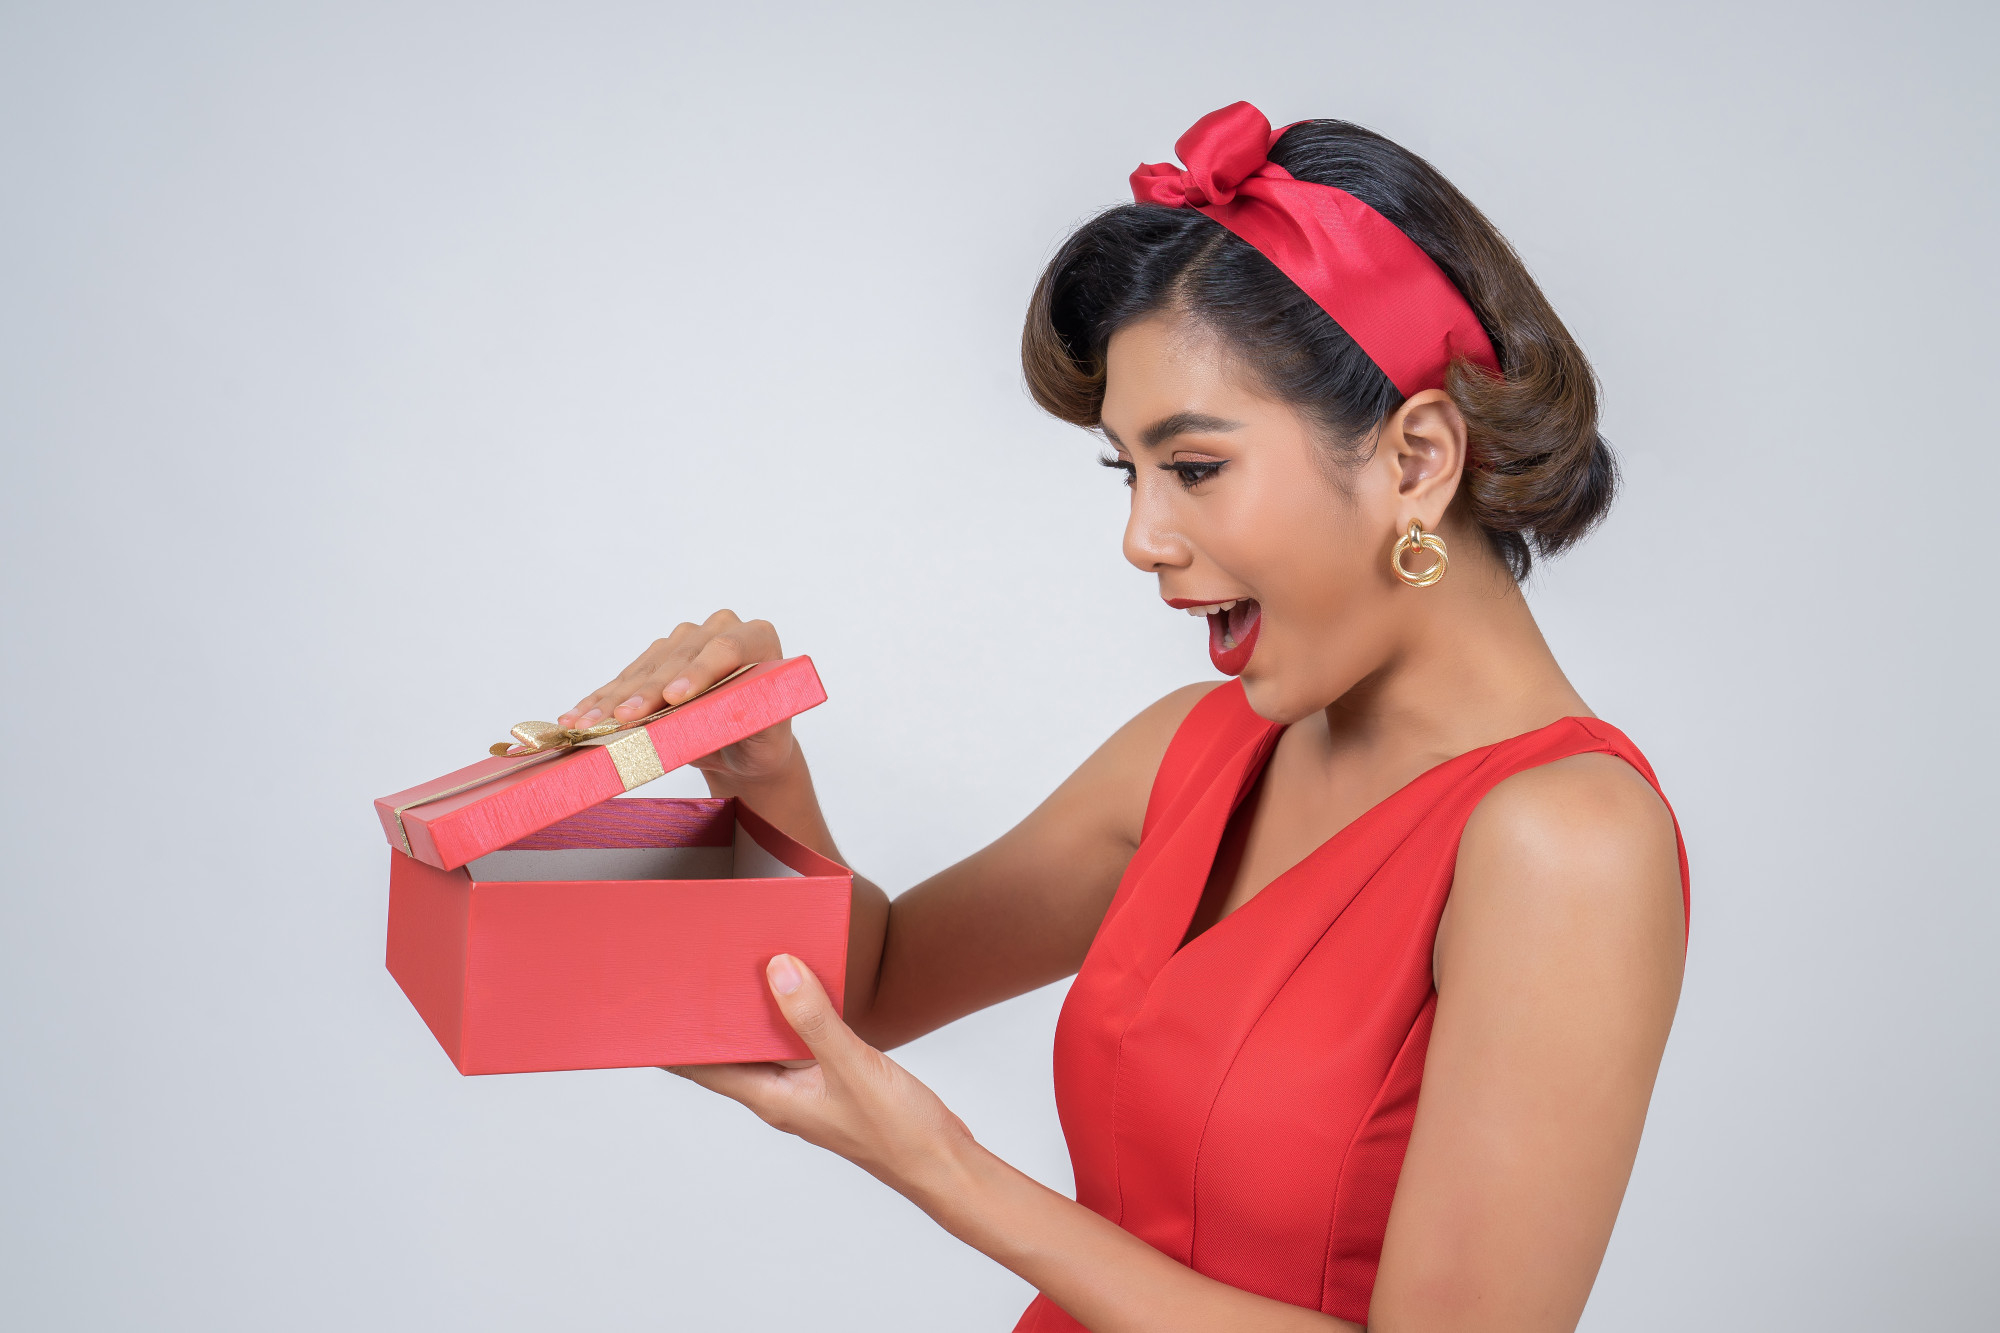 Une femme surprise réagissant à un cadeau | Source : Freepik